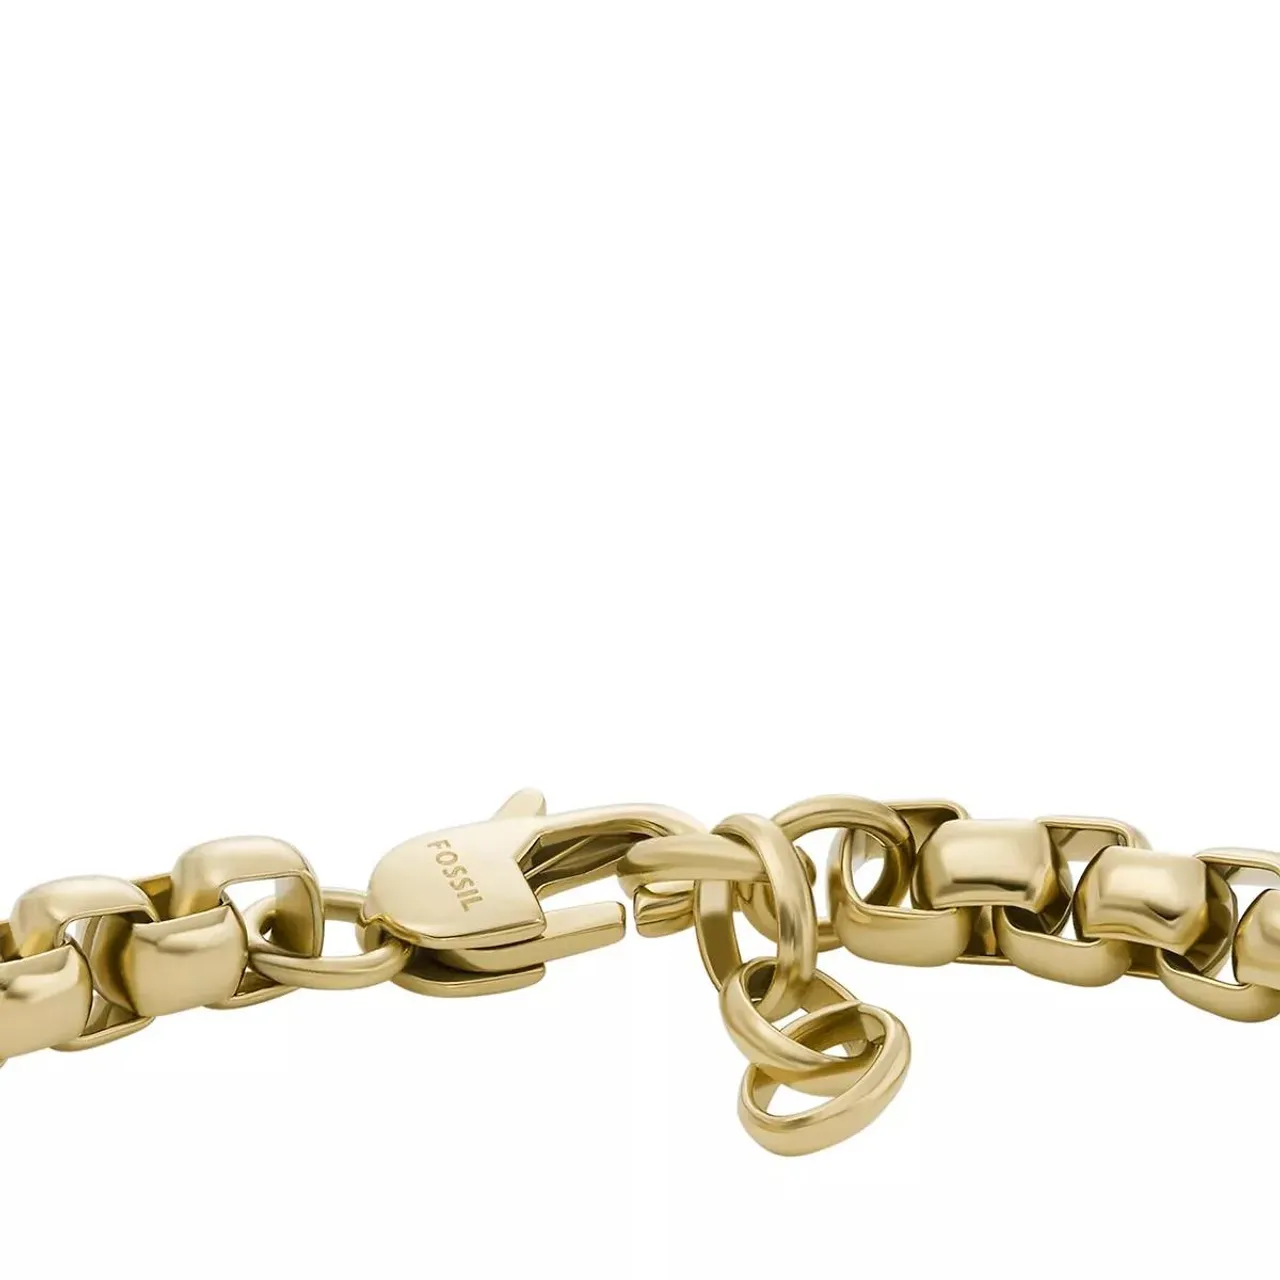 Fossil Armbänder - Drew Gold-Tone Stainless Steel Chain Bracelet - Gr. M - in Gold - für Damen